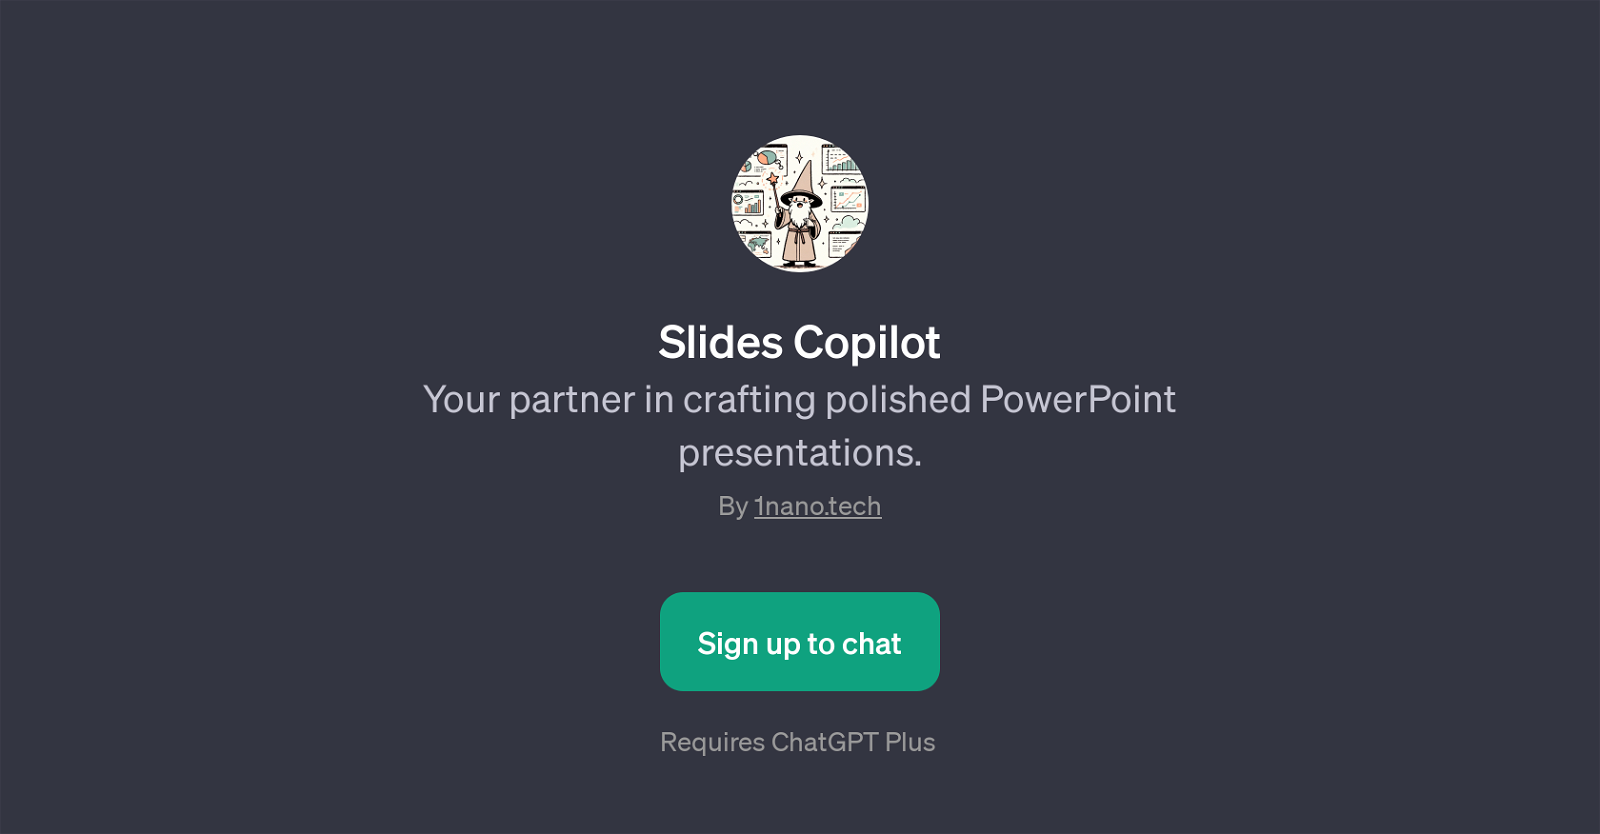 Slides Copilot website